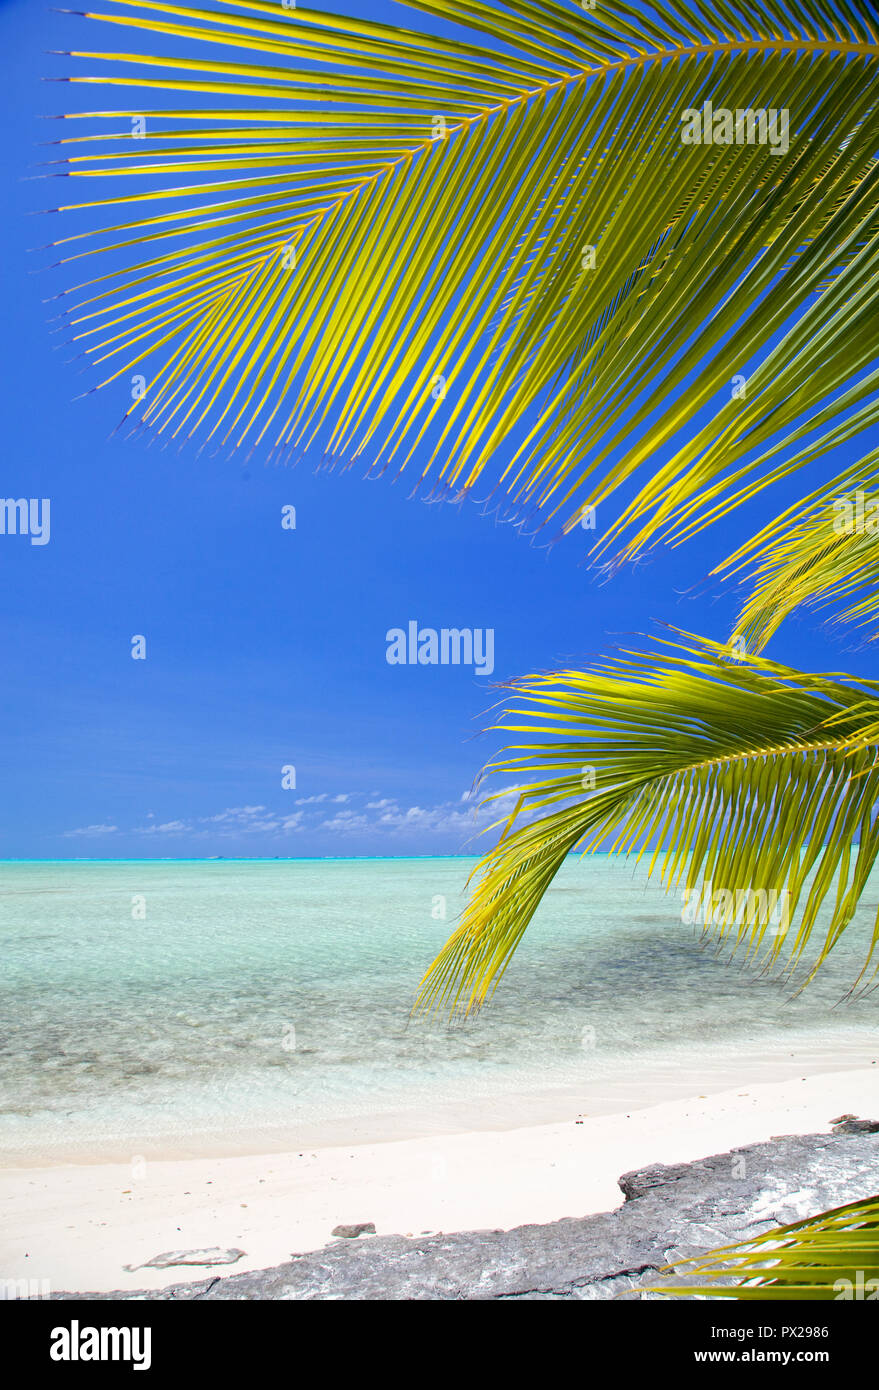 Palmen und flachen, tropischen Meer auf der Insel Mayaguana, Bahamas. Mayaguana ist eine der südlichsten Inseln der Bahamas. Stockfoto